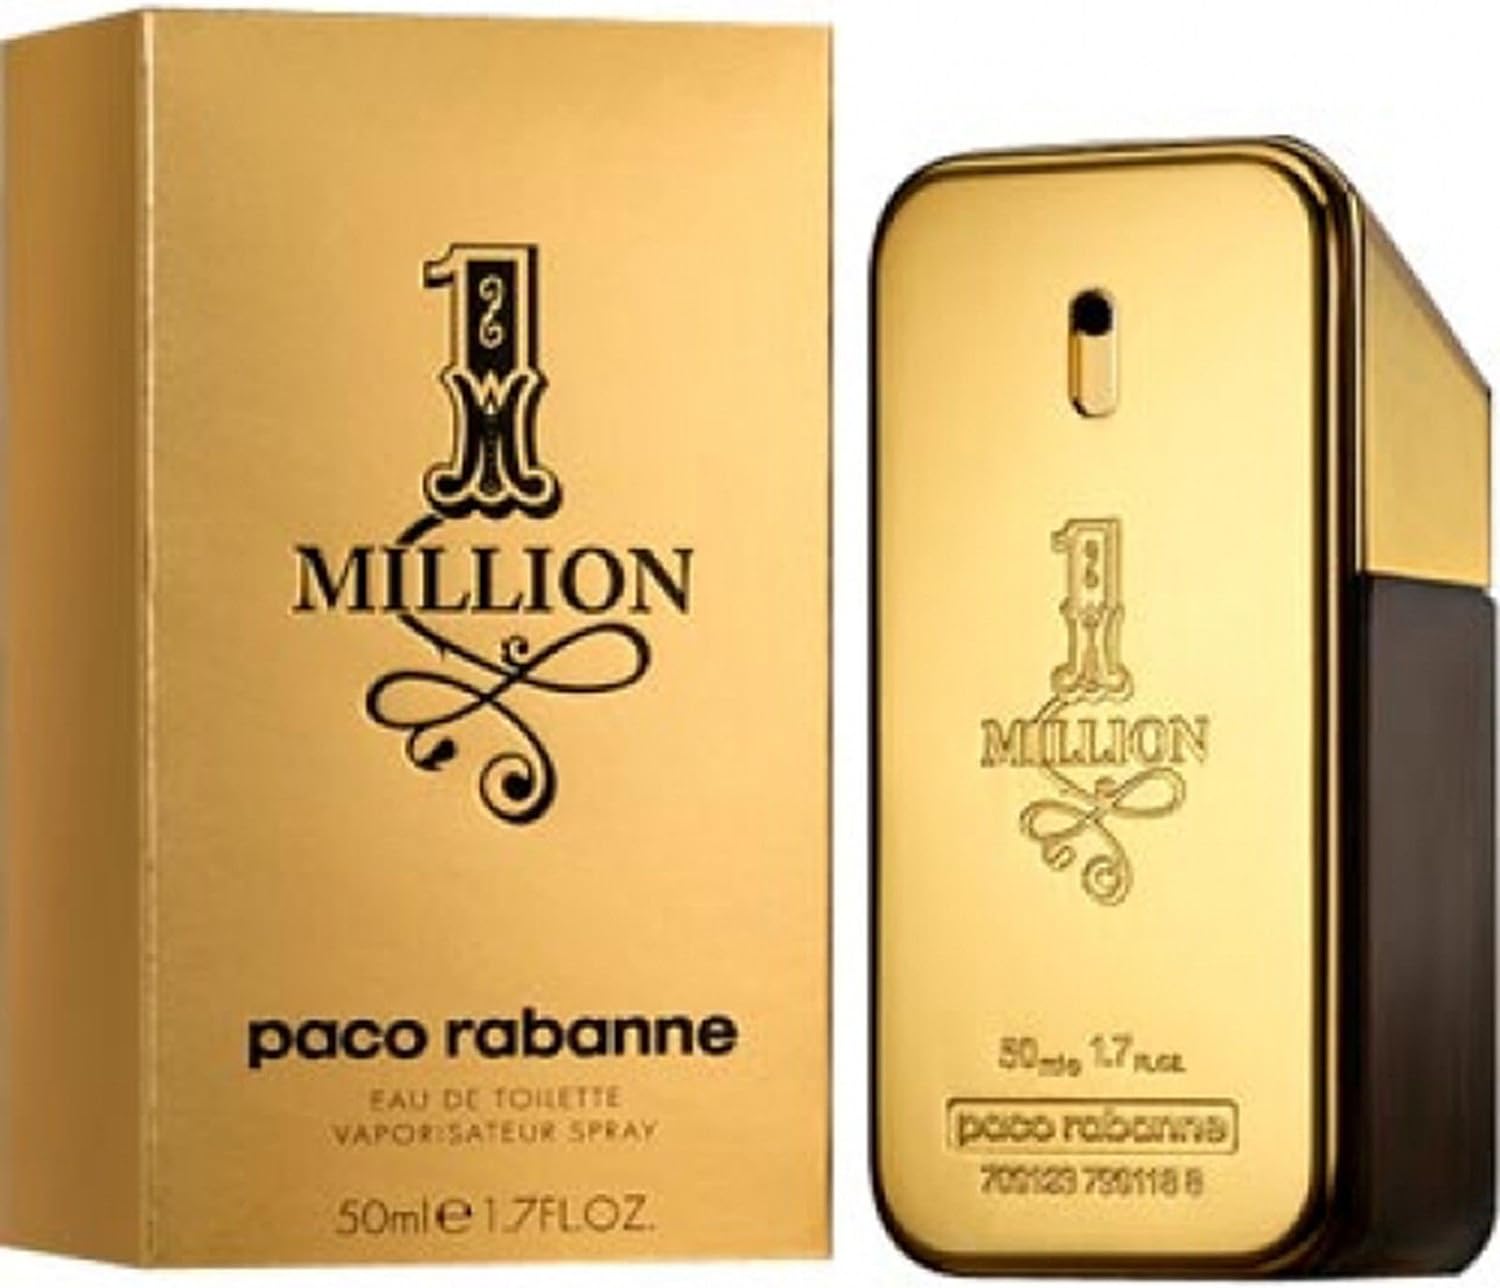 1 Million de Paco Rabanne : une Fragrance Luxueuse qui Incarne le Succès